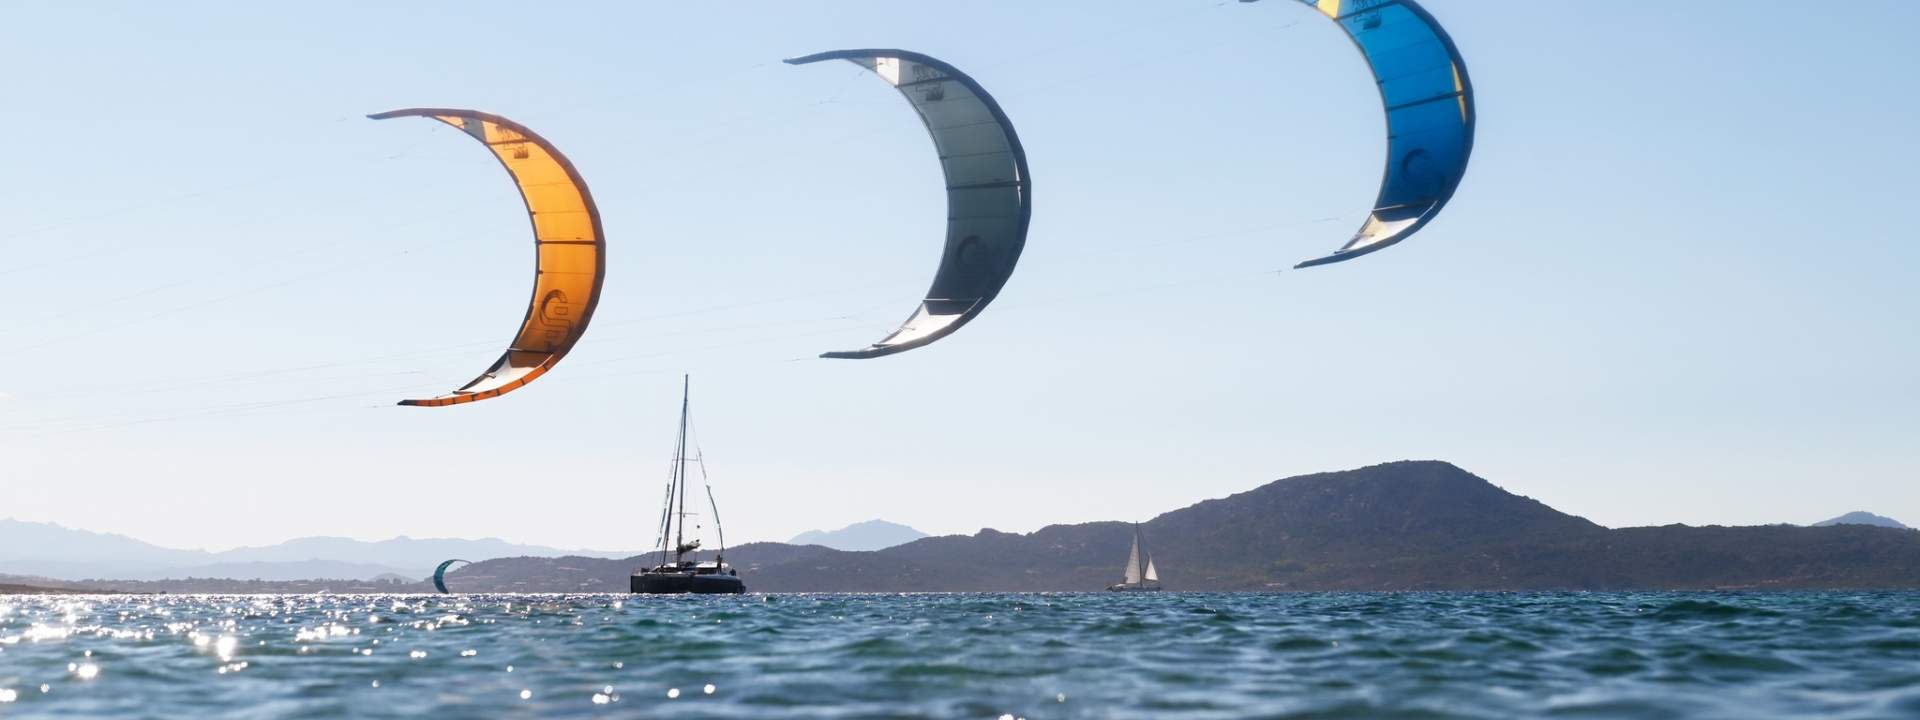 Explorez la Sardaigne et découvrez les plus beaux spots de kite !